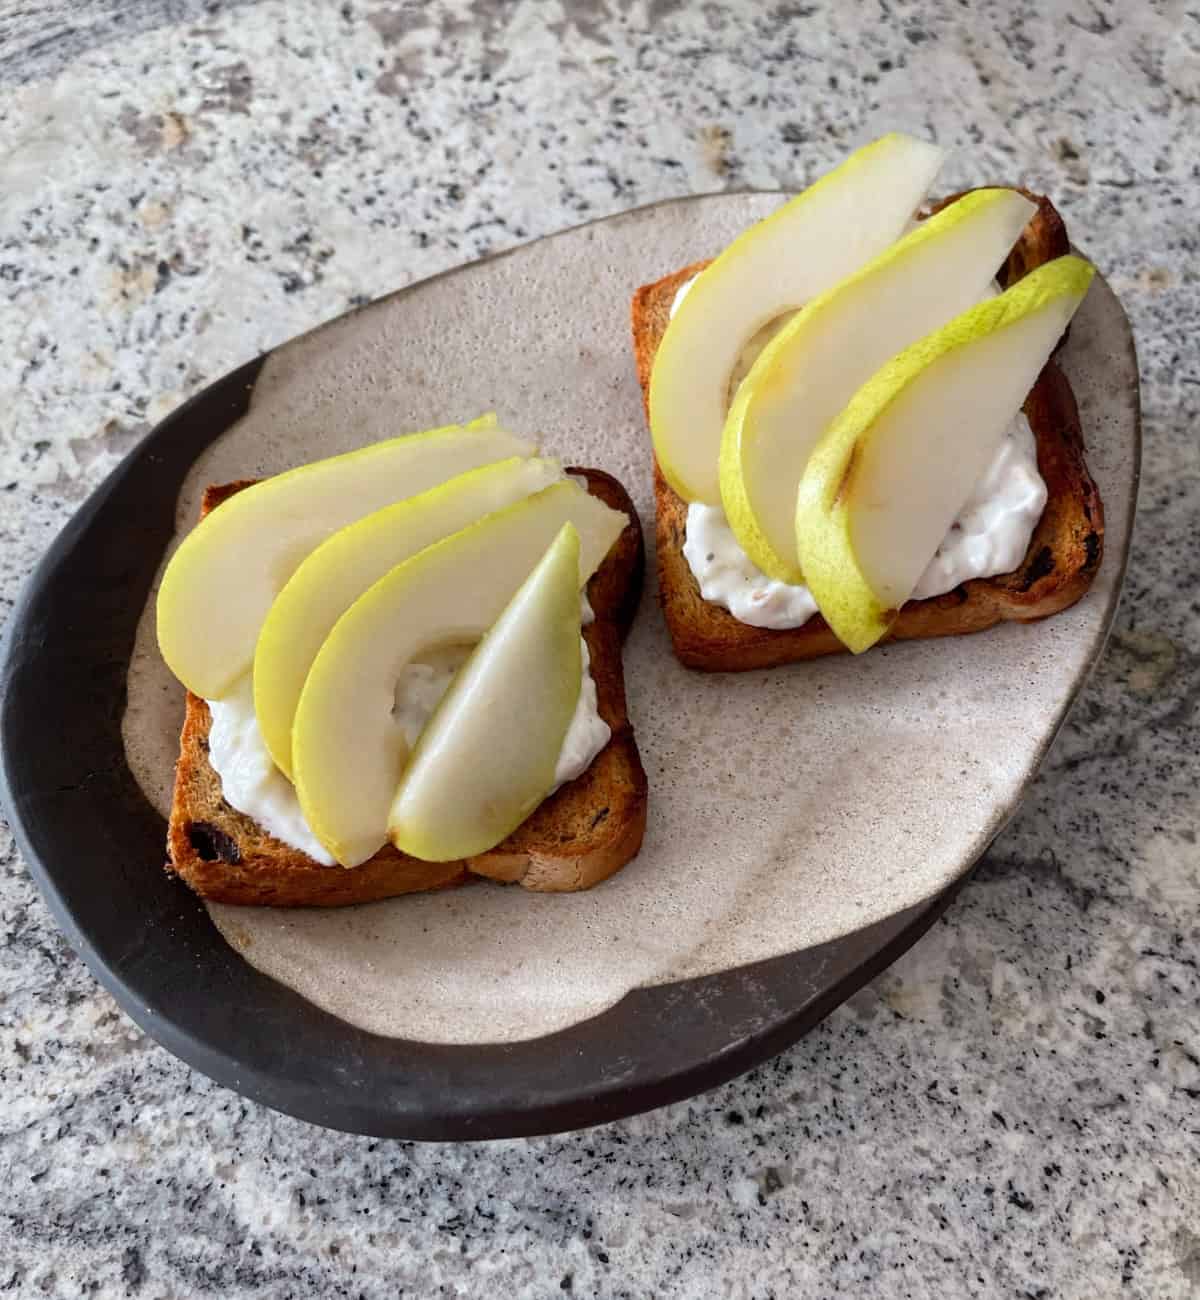 Cinnamon Raisin Toast with Honey-Walnut Yogurt Spread and sliced pear on ceramic plate.